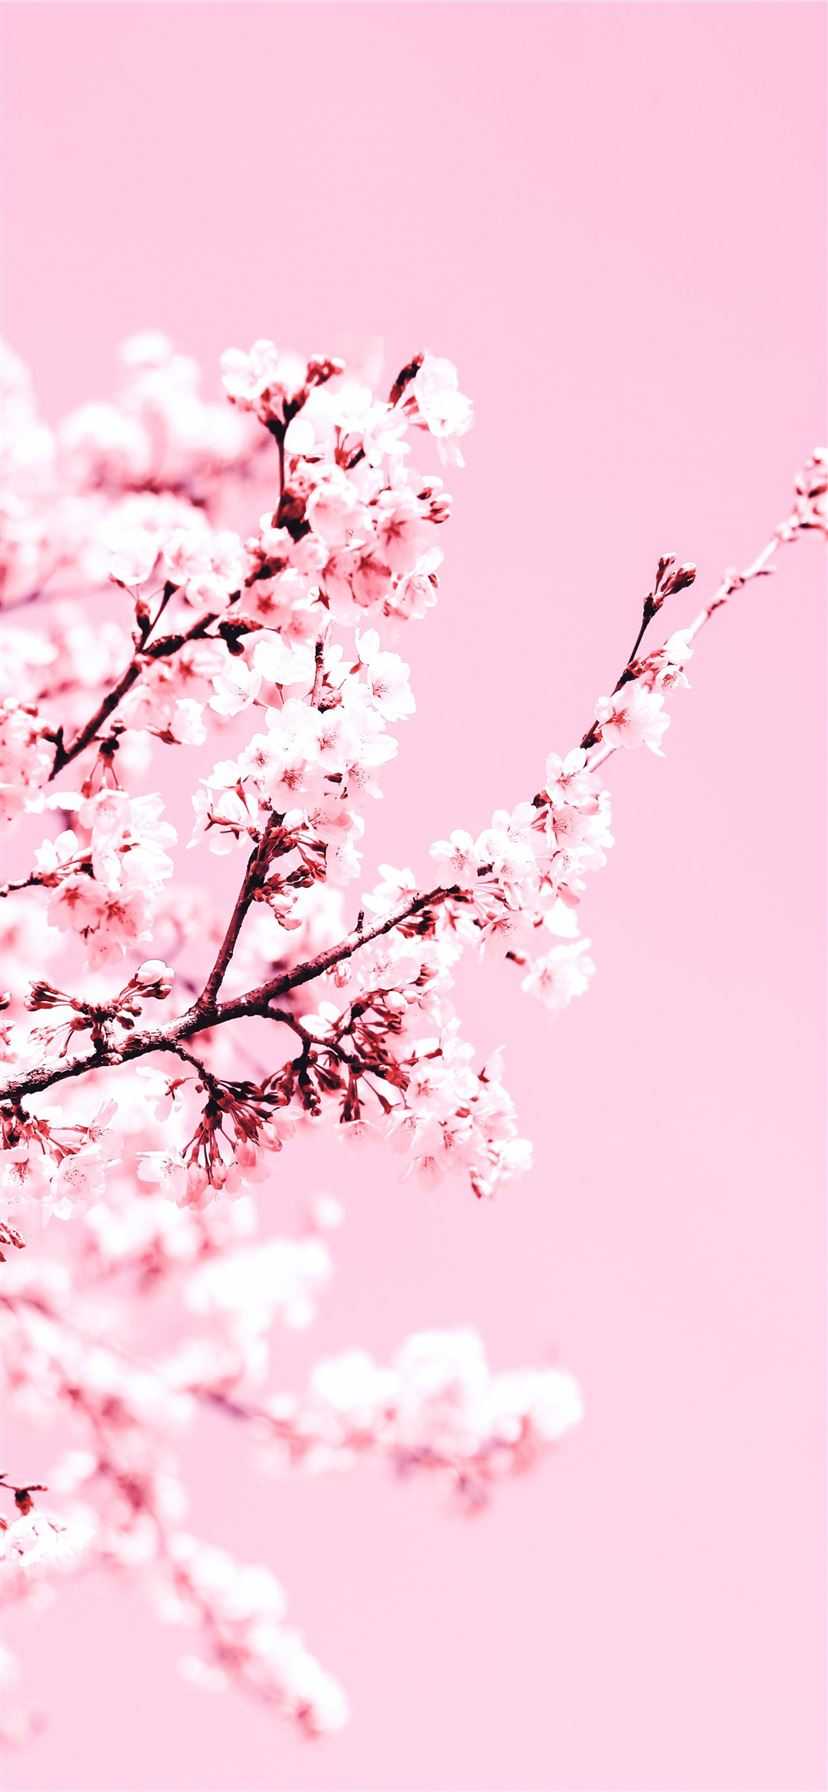 Premium Photo | Japanese cherry blossom trees and lake landscape anime  manga illustration